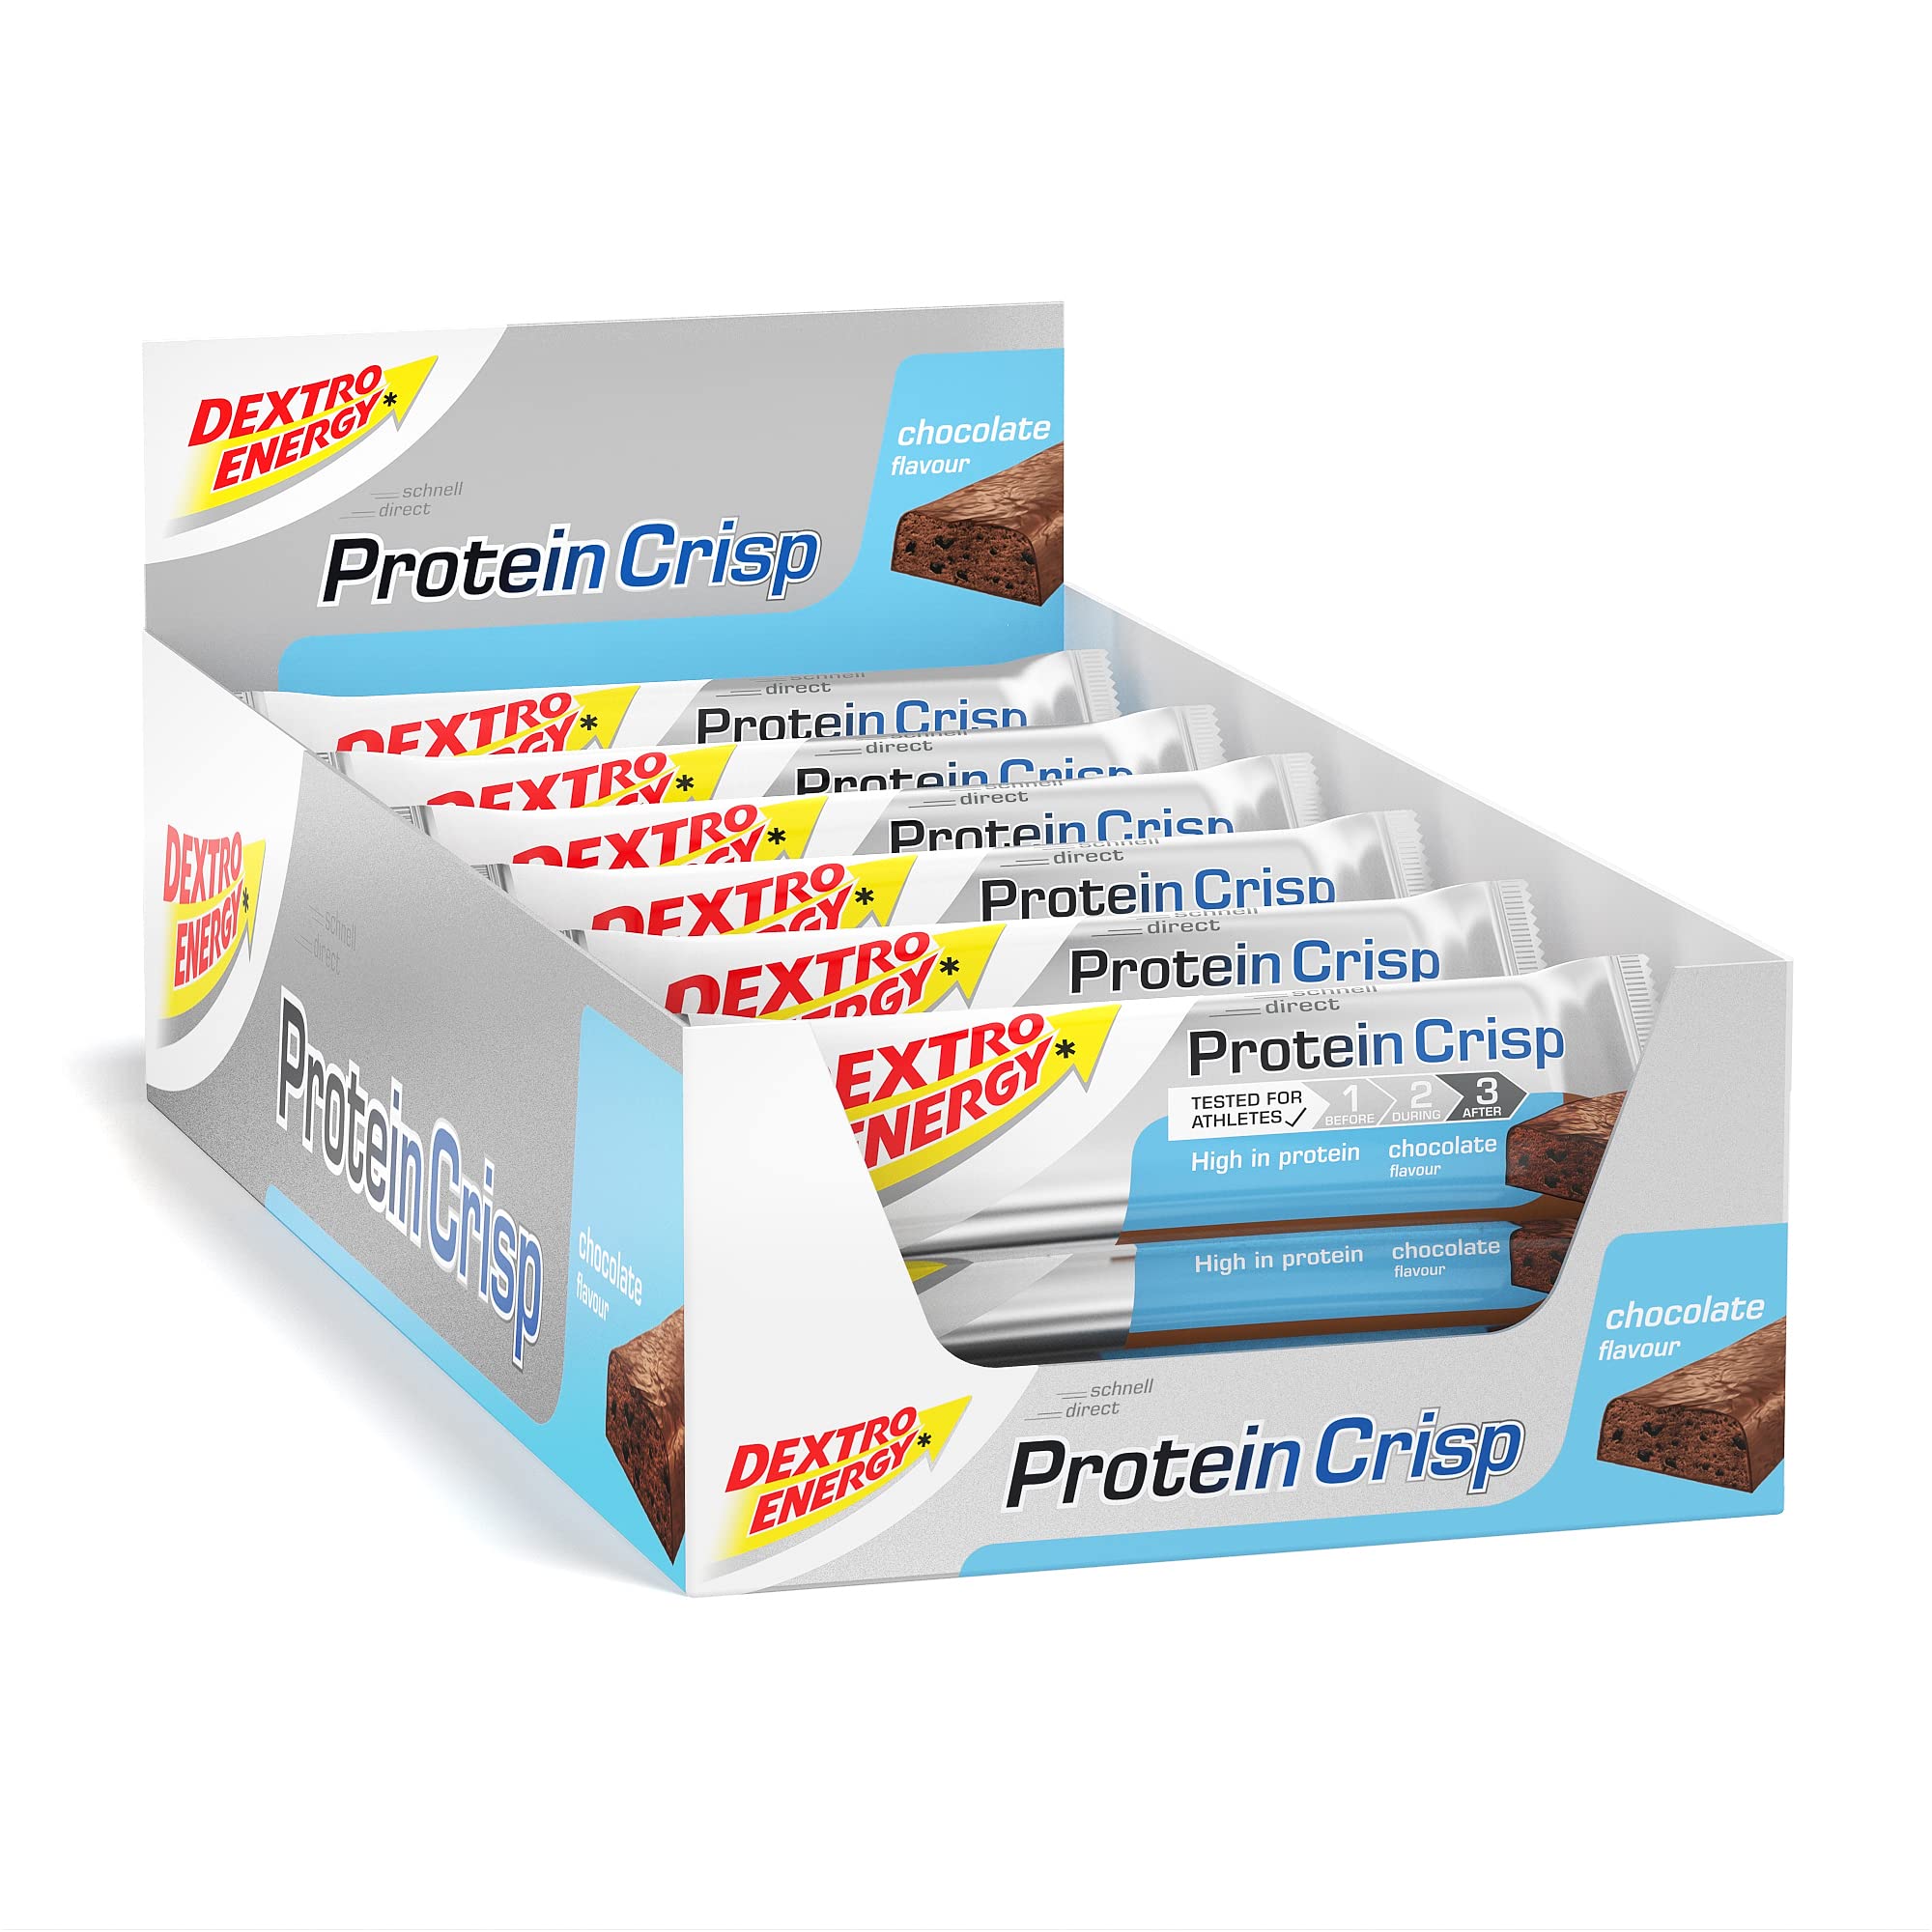 DEXTRO ENERGY PROTEIN CRISP SCHOKOLADE - 24x50g (24er Pack) - Audauer Protein Bar mit 3:1 Verhältnis von Kohlenhydraten und Protein, Eiweißriegel für Workout und Regeneration, Glutenfrei